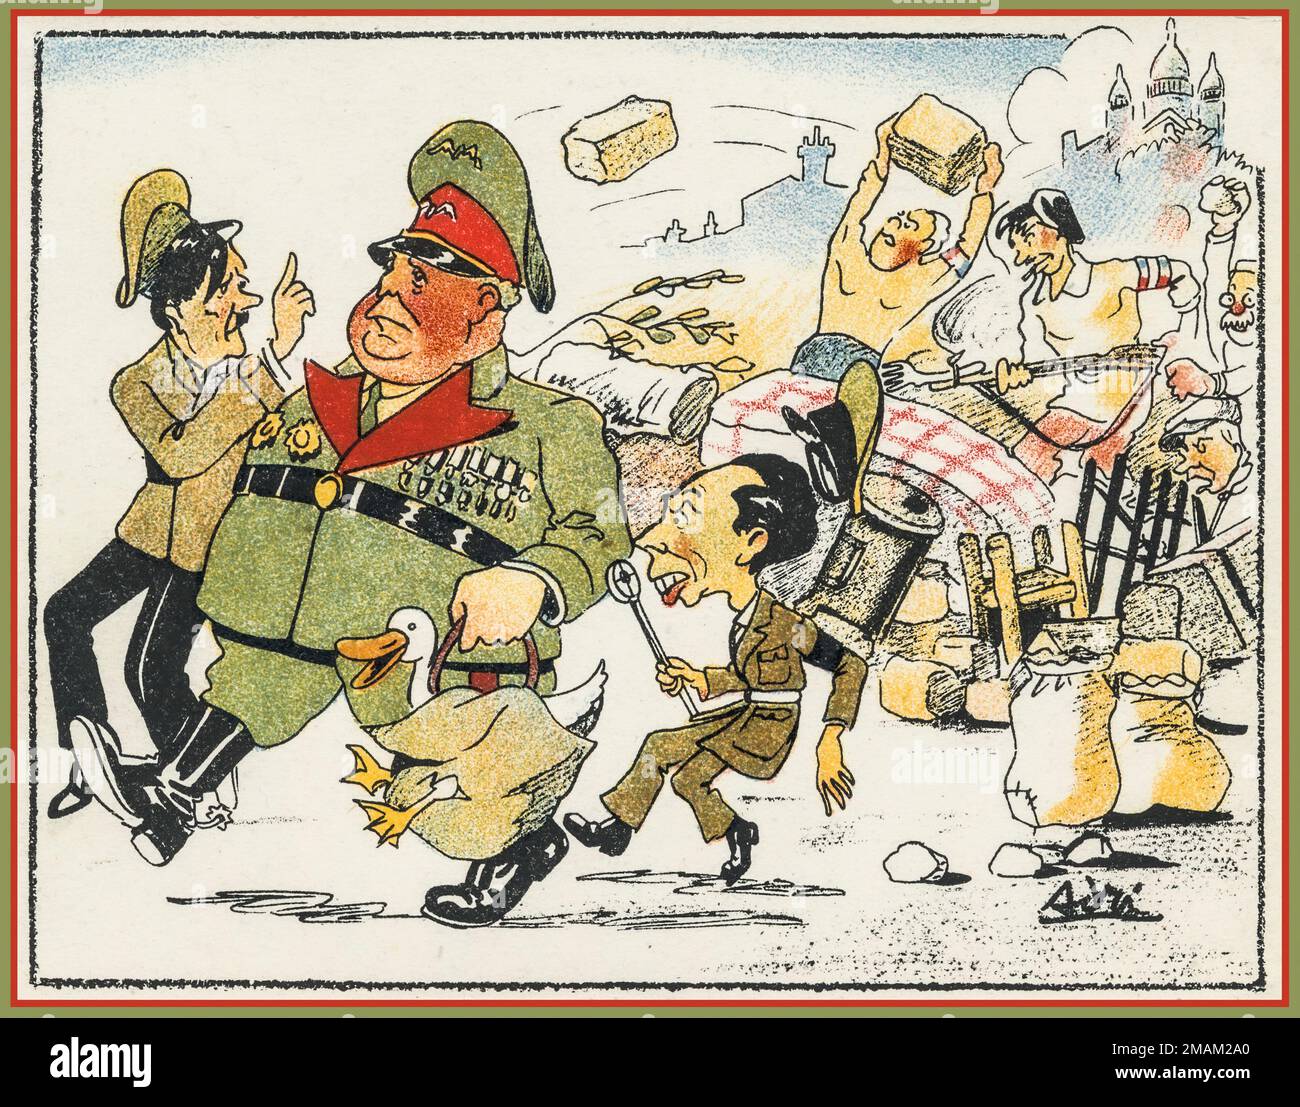 Caricatura de dibujos animados antinazi de WW2 con un gordo Hermann Goering, con Adolf Hitler protestando y Joseph Goebbels con su micrófono de propaganda en Francia, experimentando una fuerte resistencia en la frontera francesa de París. Segunda Guerra Mundial Foto de stock